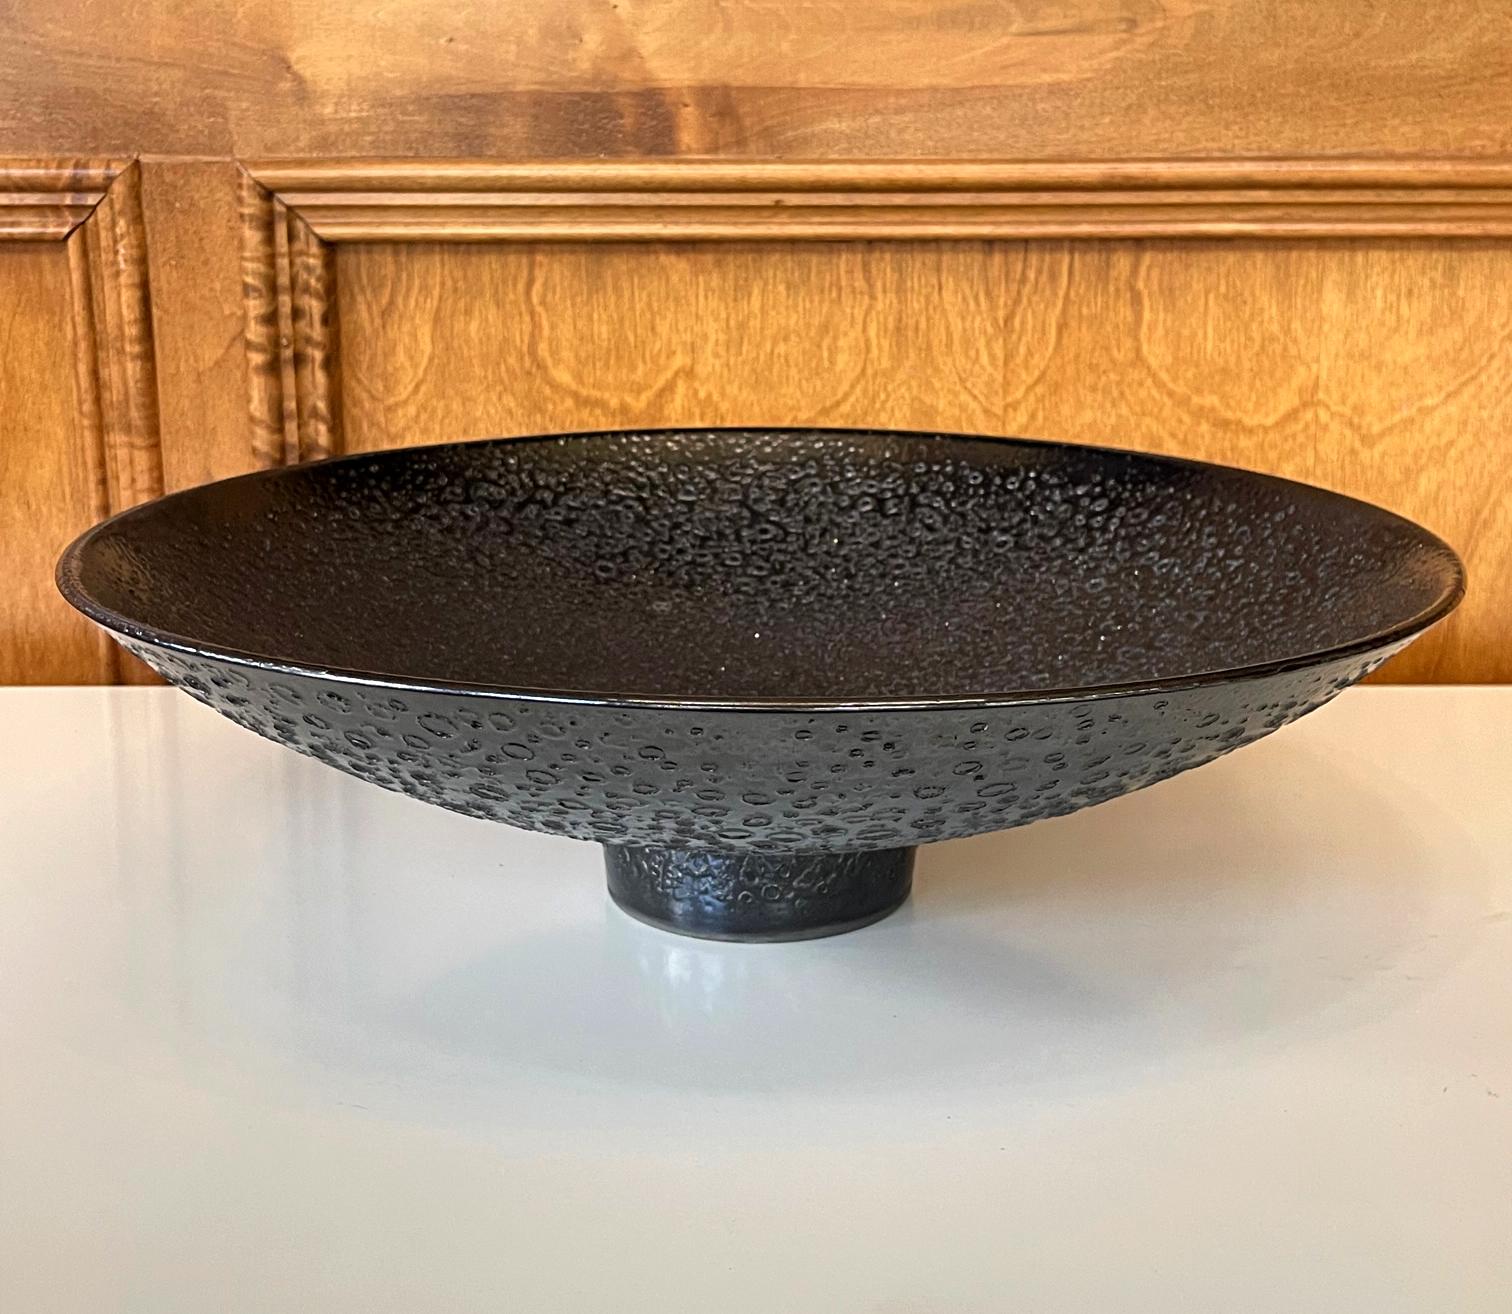 Un bol sur pied en céramique de taille impressionnante, réalisé par le potier californien James Lovera (1920-2015), probablement au début des années 2000. Le bol est entièrement recouvert d'une glaçure de lave métallique noire, qui a fait la